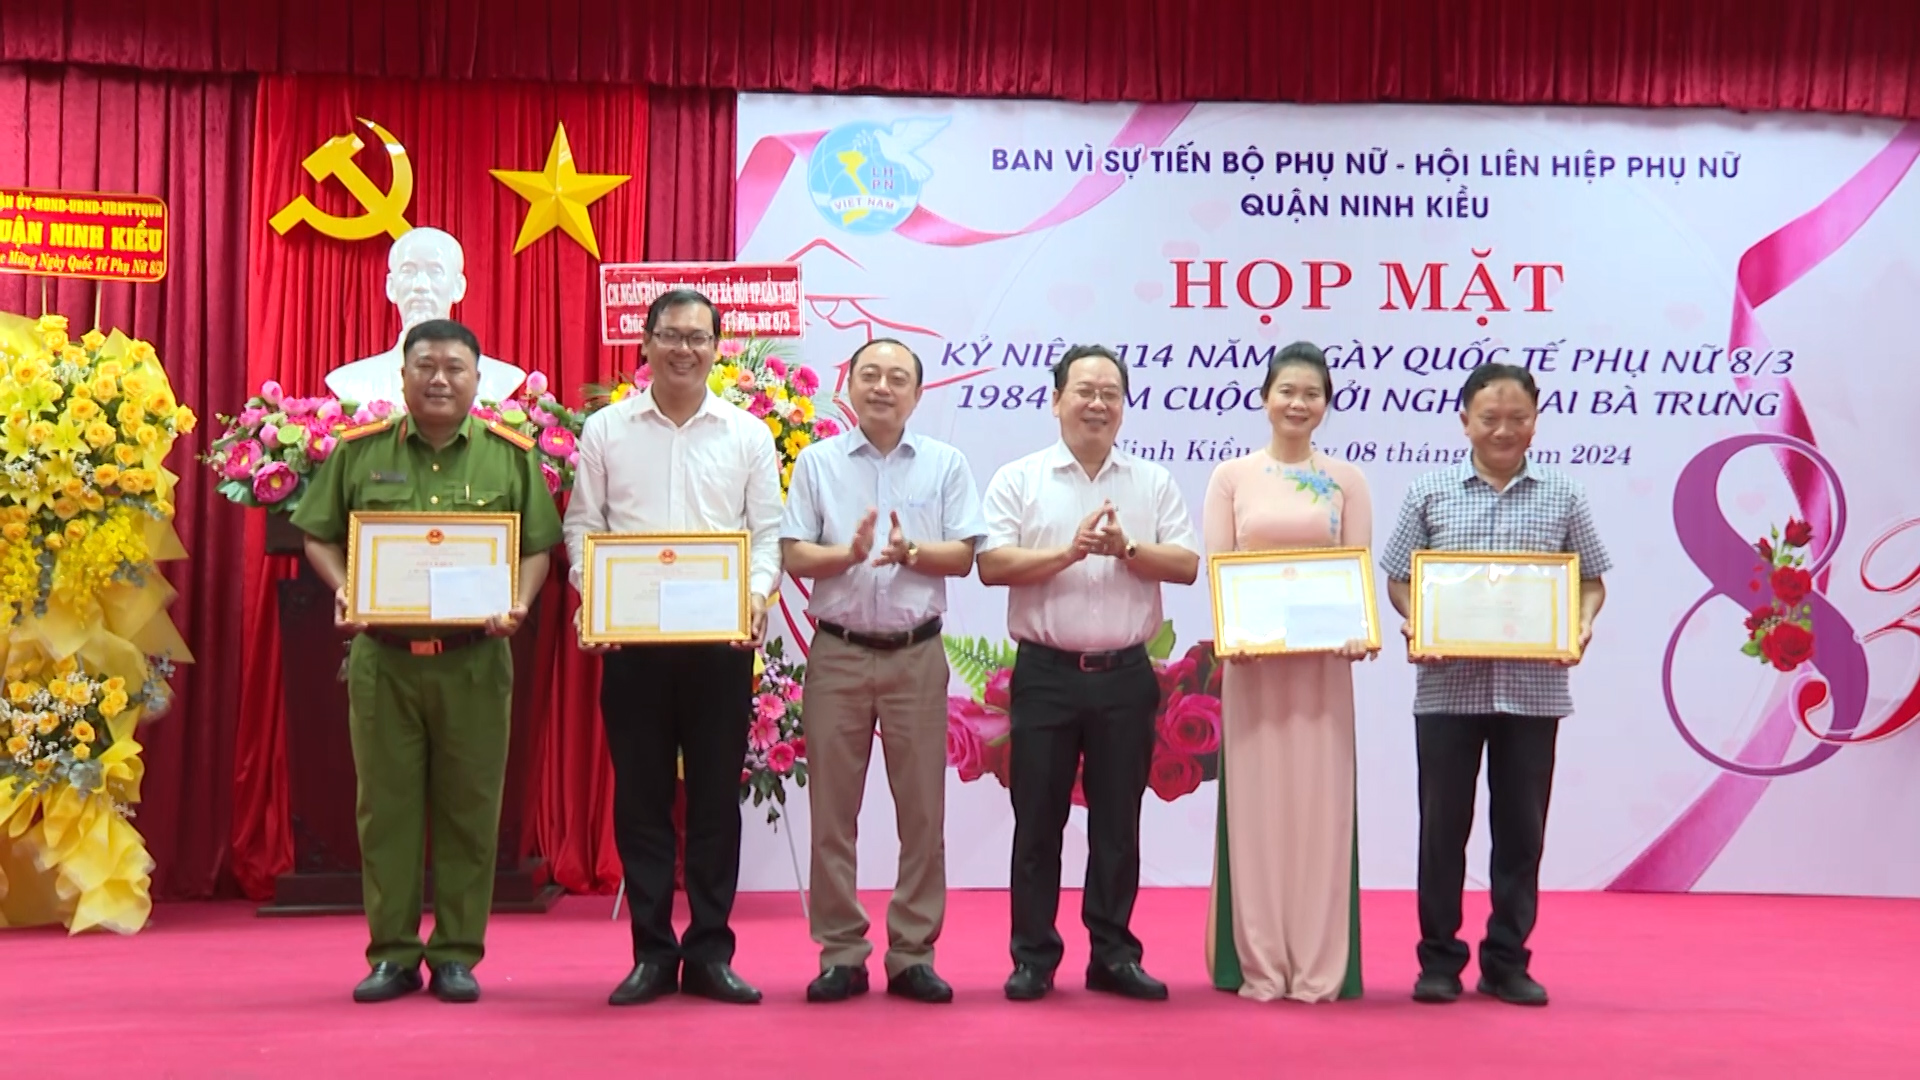 Hình 5: Dịp này, lãnh đạo quận Ninh Kiều đã trao tặng giấy khen cho các tập thể, cá nhân tiêu biểu có nhiều đóng góp Vì sự tiến bộ phụ nữ quận trong năm qua